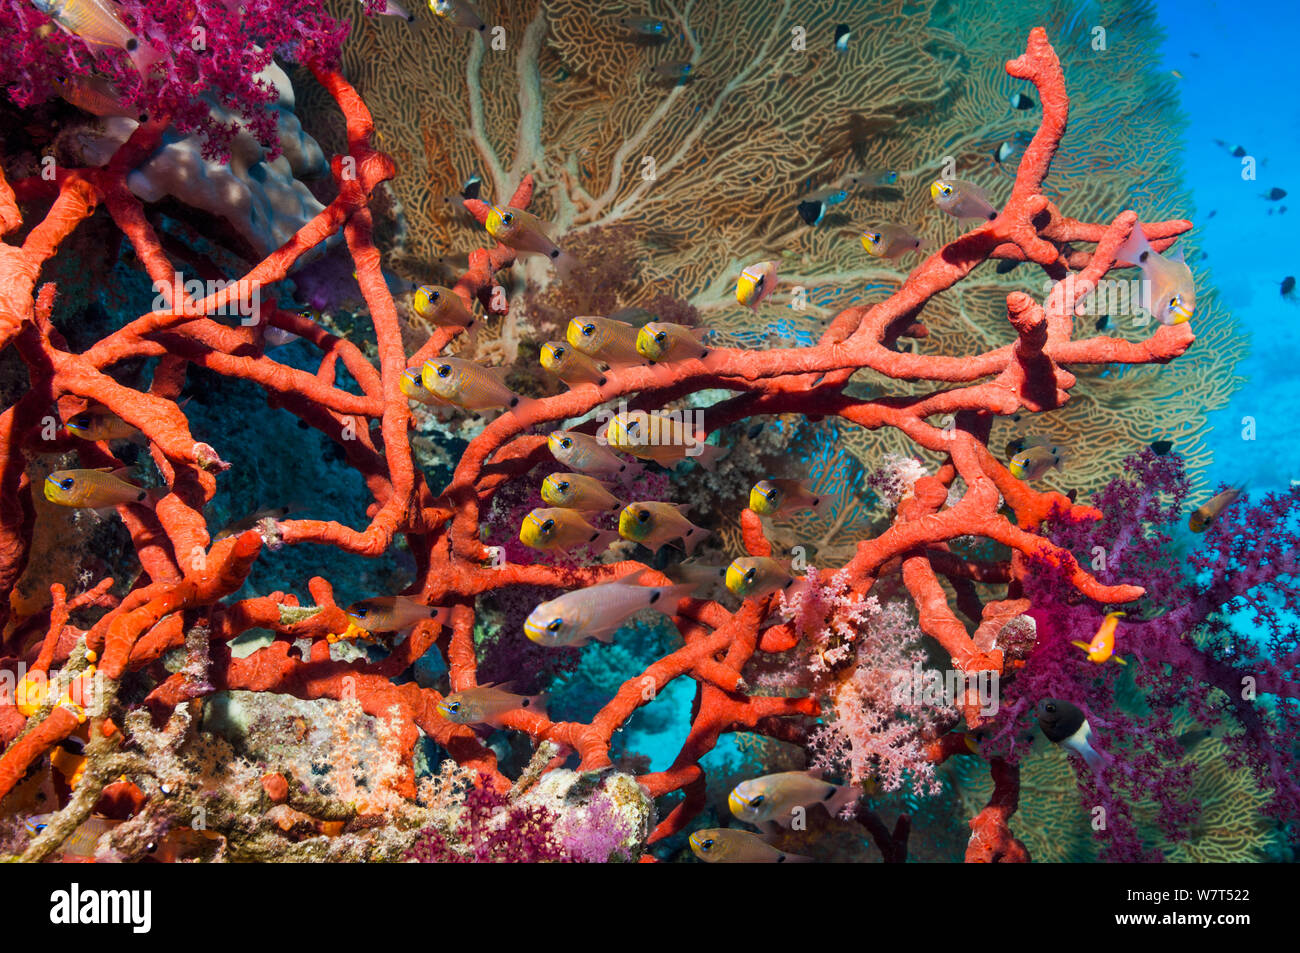 Cardenales relucientes (Archamia lineolata) sobre arrecifes de coral rojo con cuerda (esponja Amphimedon compressa) y corales blandos y gorgonias en segundo plano. Egipto, el Mar Rojo. Foto de stock